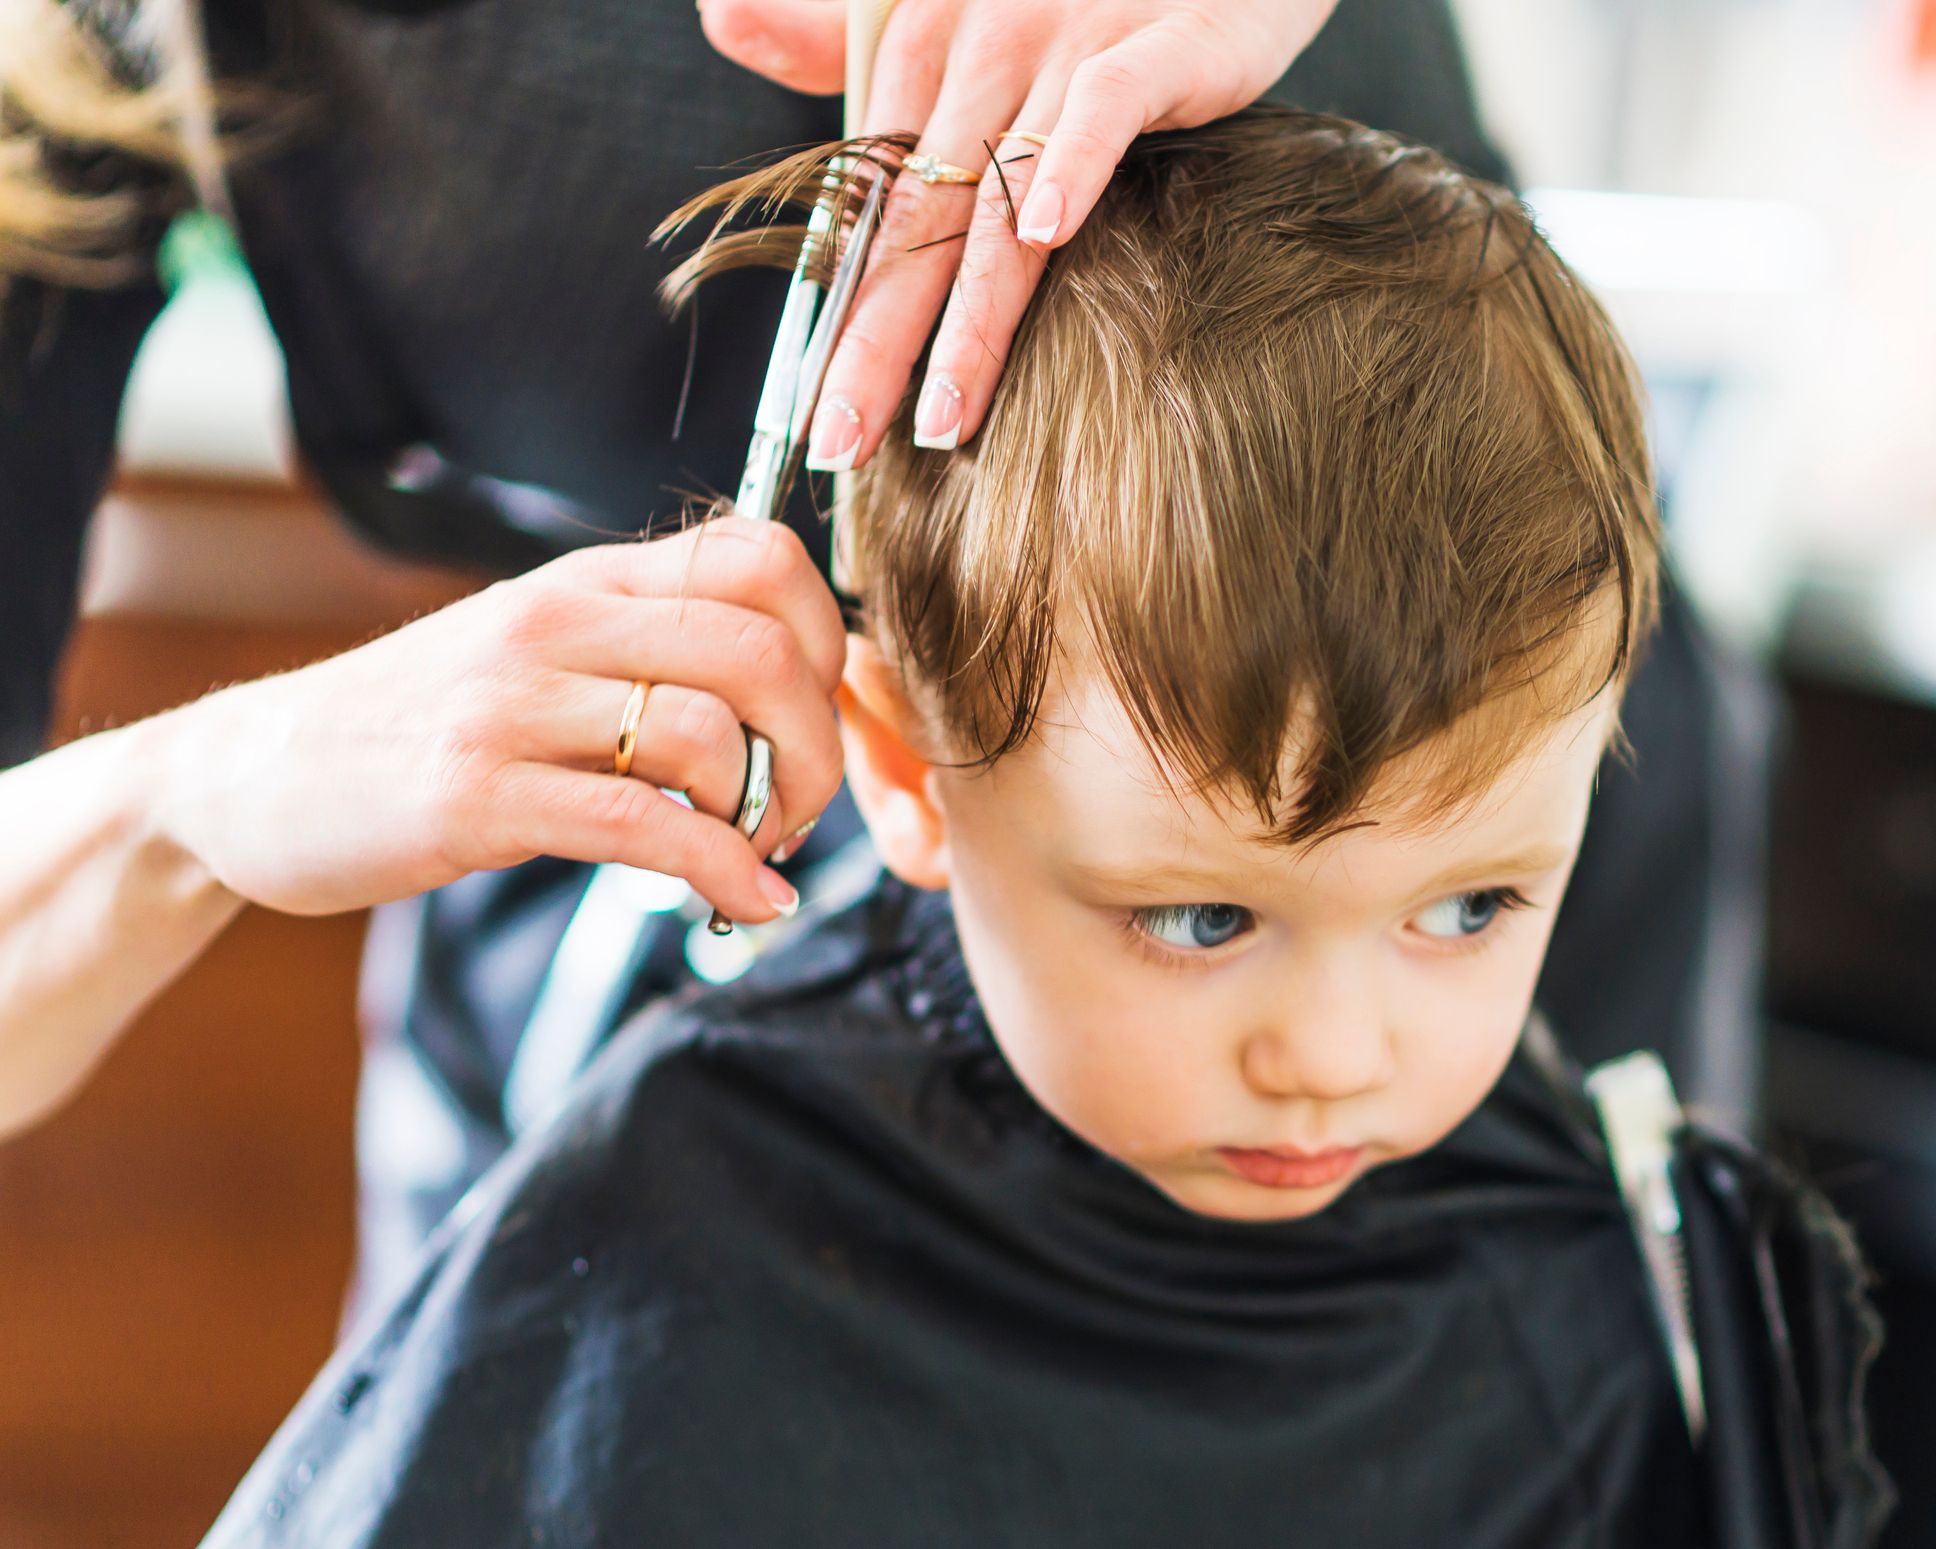 Wenn Kinder begreifen, dass Haareschneiden nicht wehtut, ist es meistens schon kein Problem mehr.